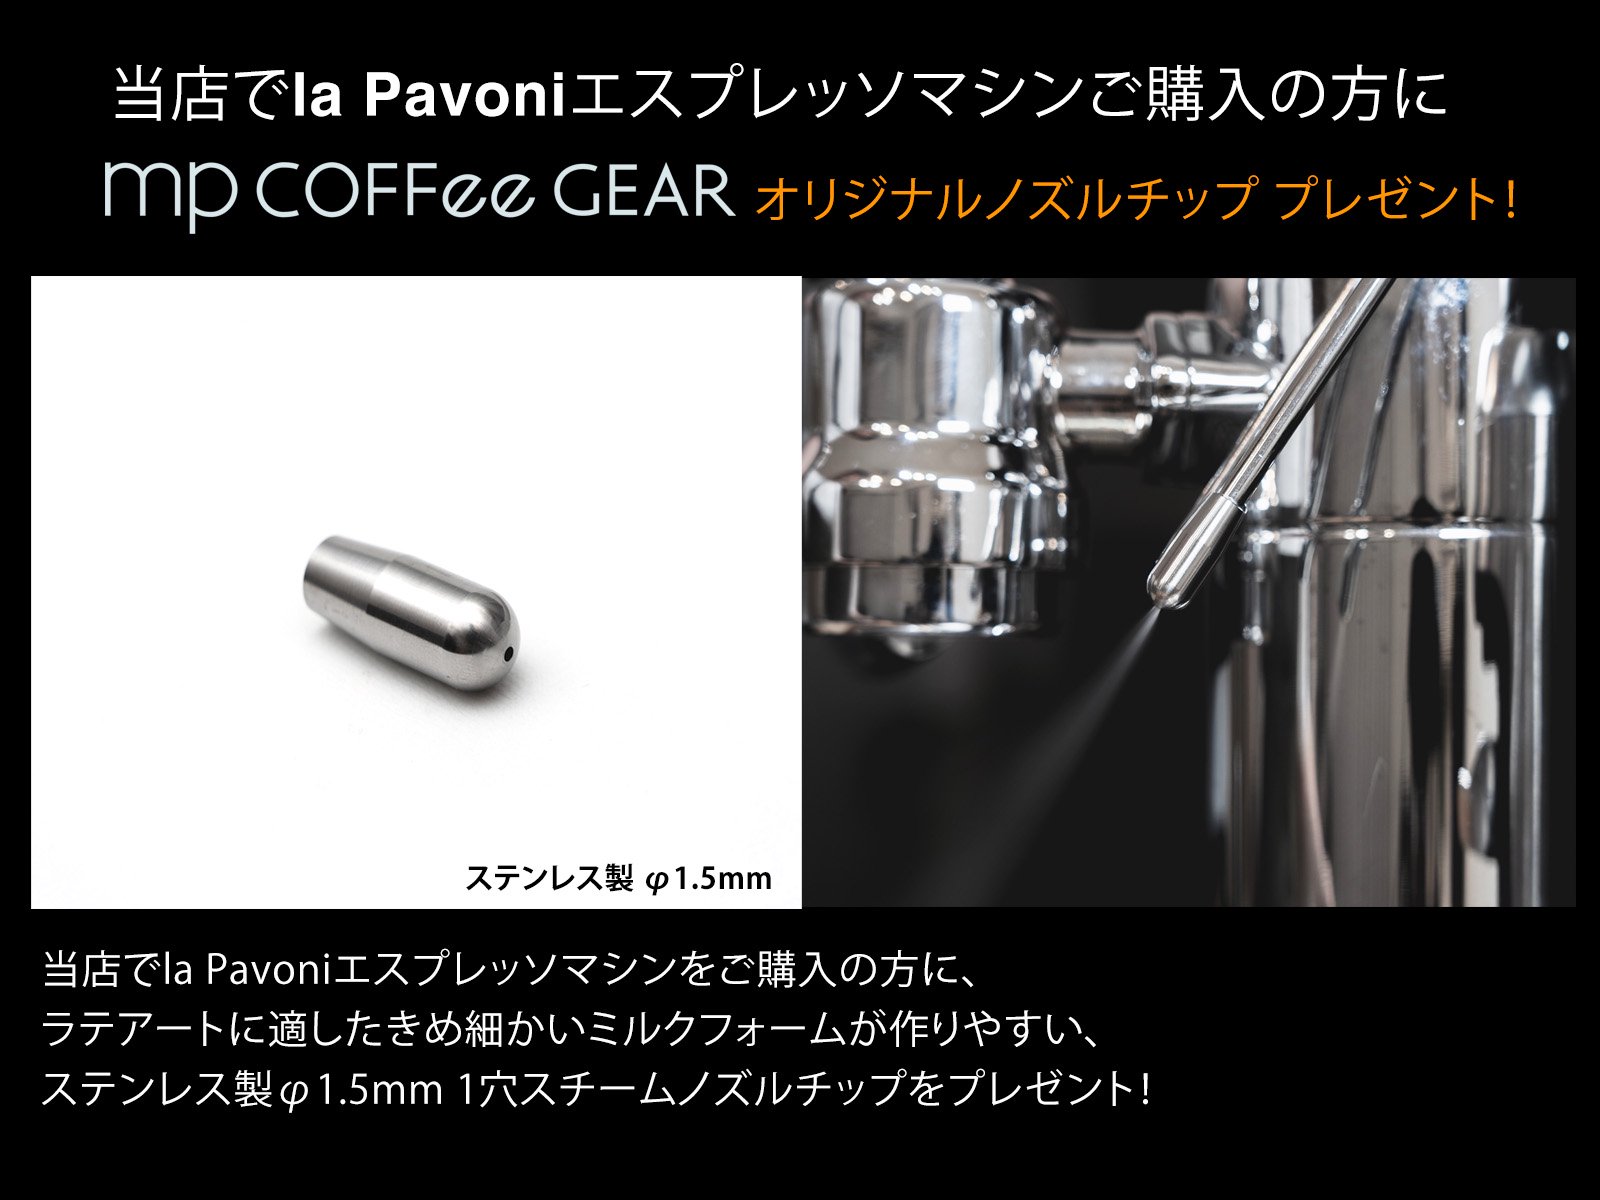 la Pavoni ラ・パボーニ　”PROFESSIONAL” PLH　ウッドレバーグリップ　エスプレッソマシン - mp COFFee GEAR  ONLINE SHOP （エムピーコーヒーギア）コーヒーツールの専門ショップ